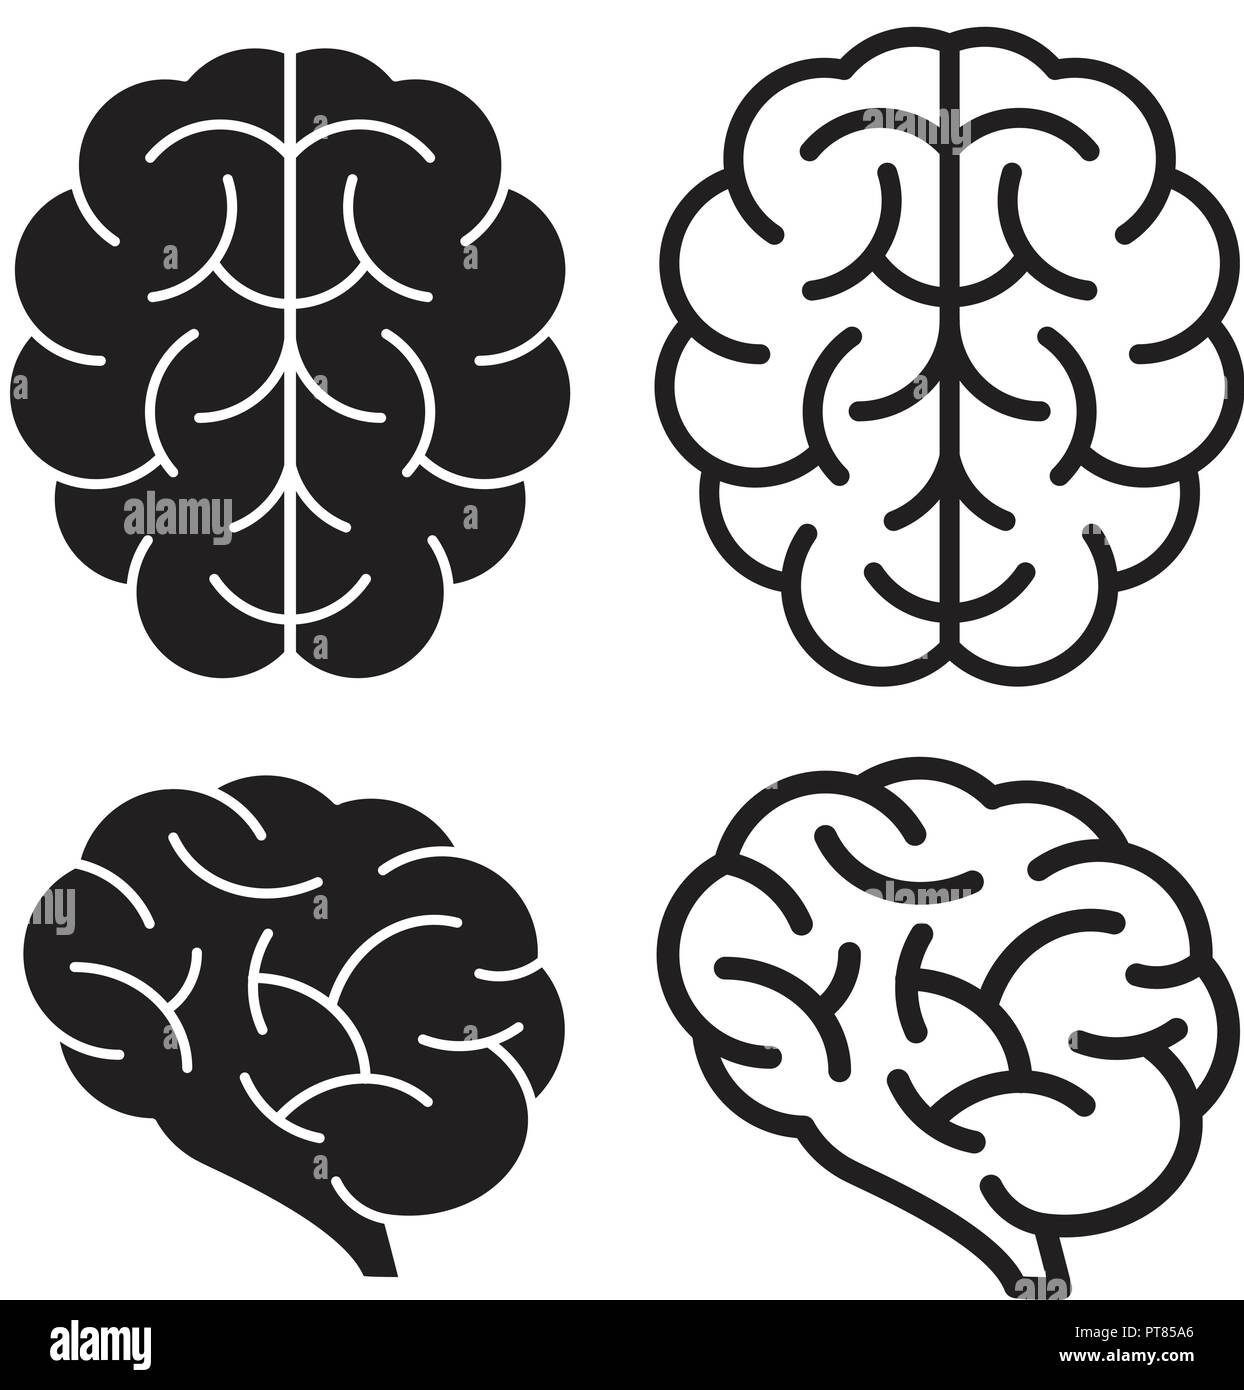 Vektor menschliche Gehirn Symbole auf dem weißen Hintergrund für Psychologie Gesundheit Illustrationen isoliert. dünne Linie Gehirn gyrus Design Stock Vektor